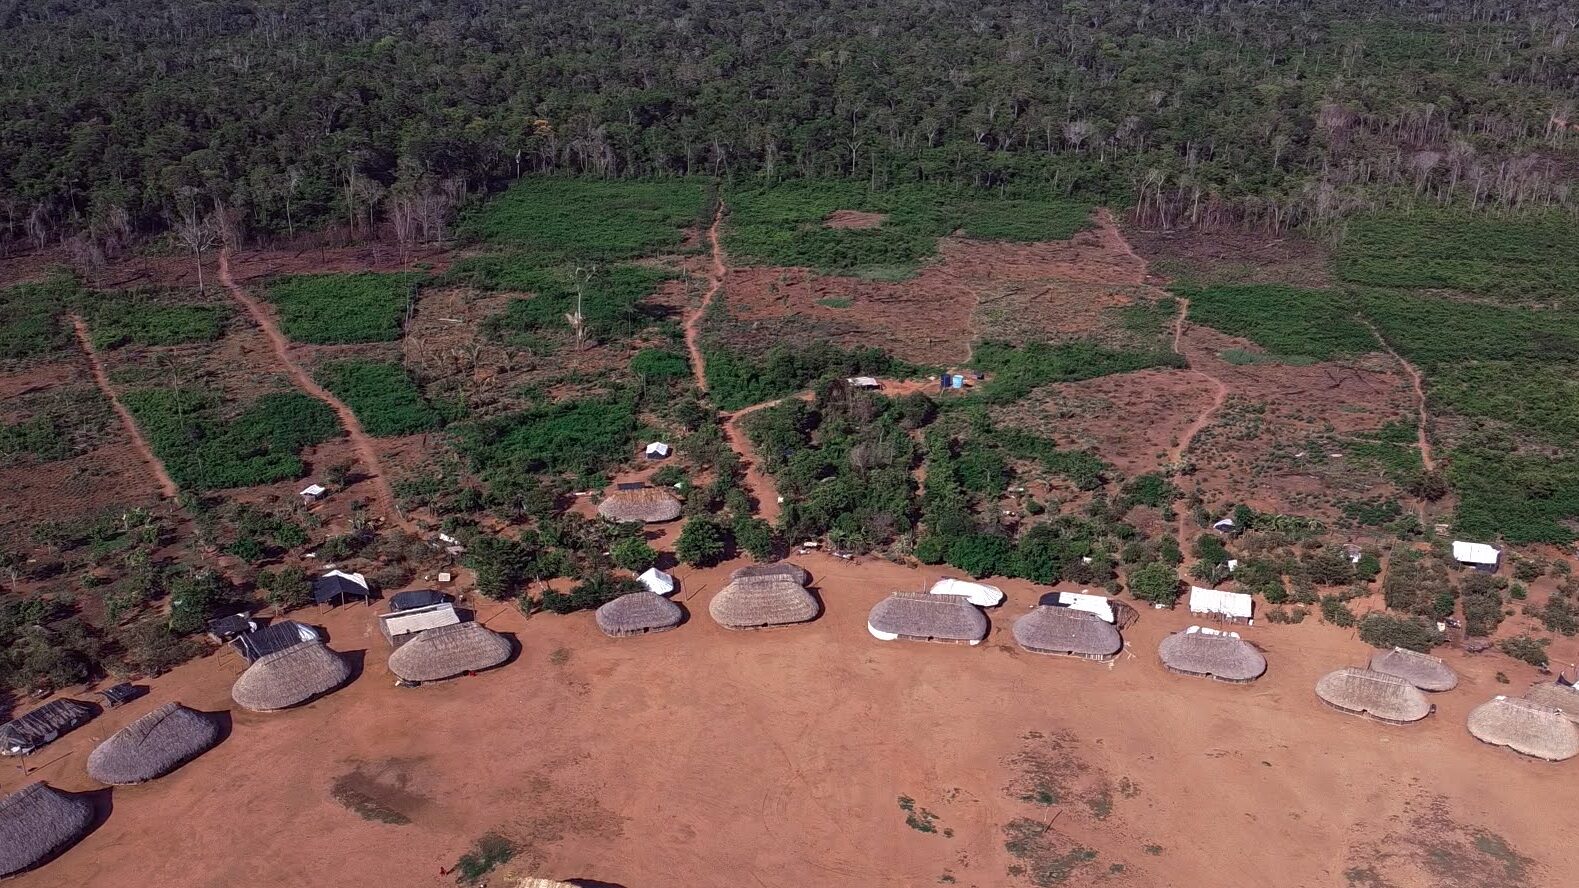 <p>Vista aérea de las viviendas de la nueva aldea Khikatxi, en el territorio indígena wawi, en el estado de Mato Grosso. Los indígenas construyen desde cero su aldea. (Imagen: Flávia Milhorance / Diálogo Chino)</p>